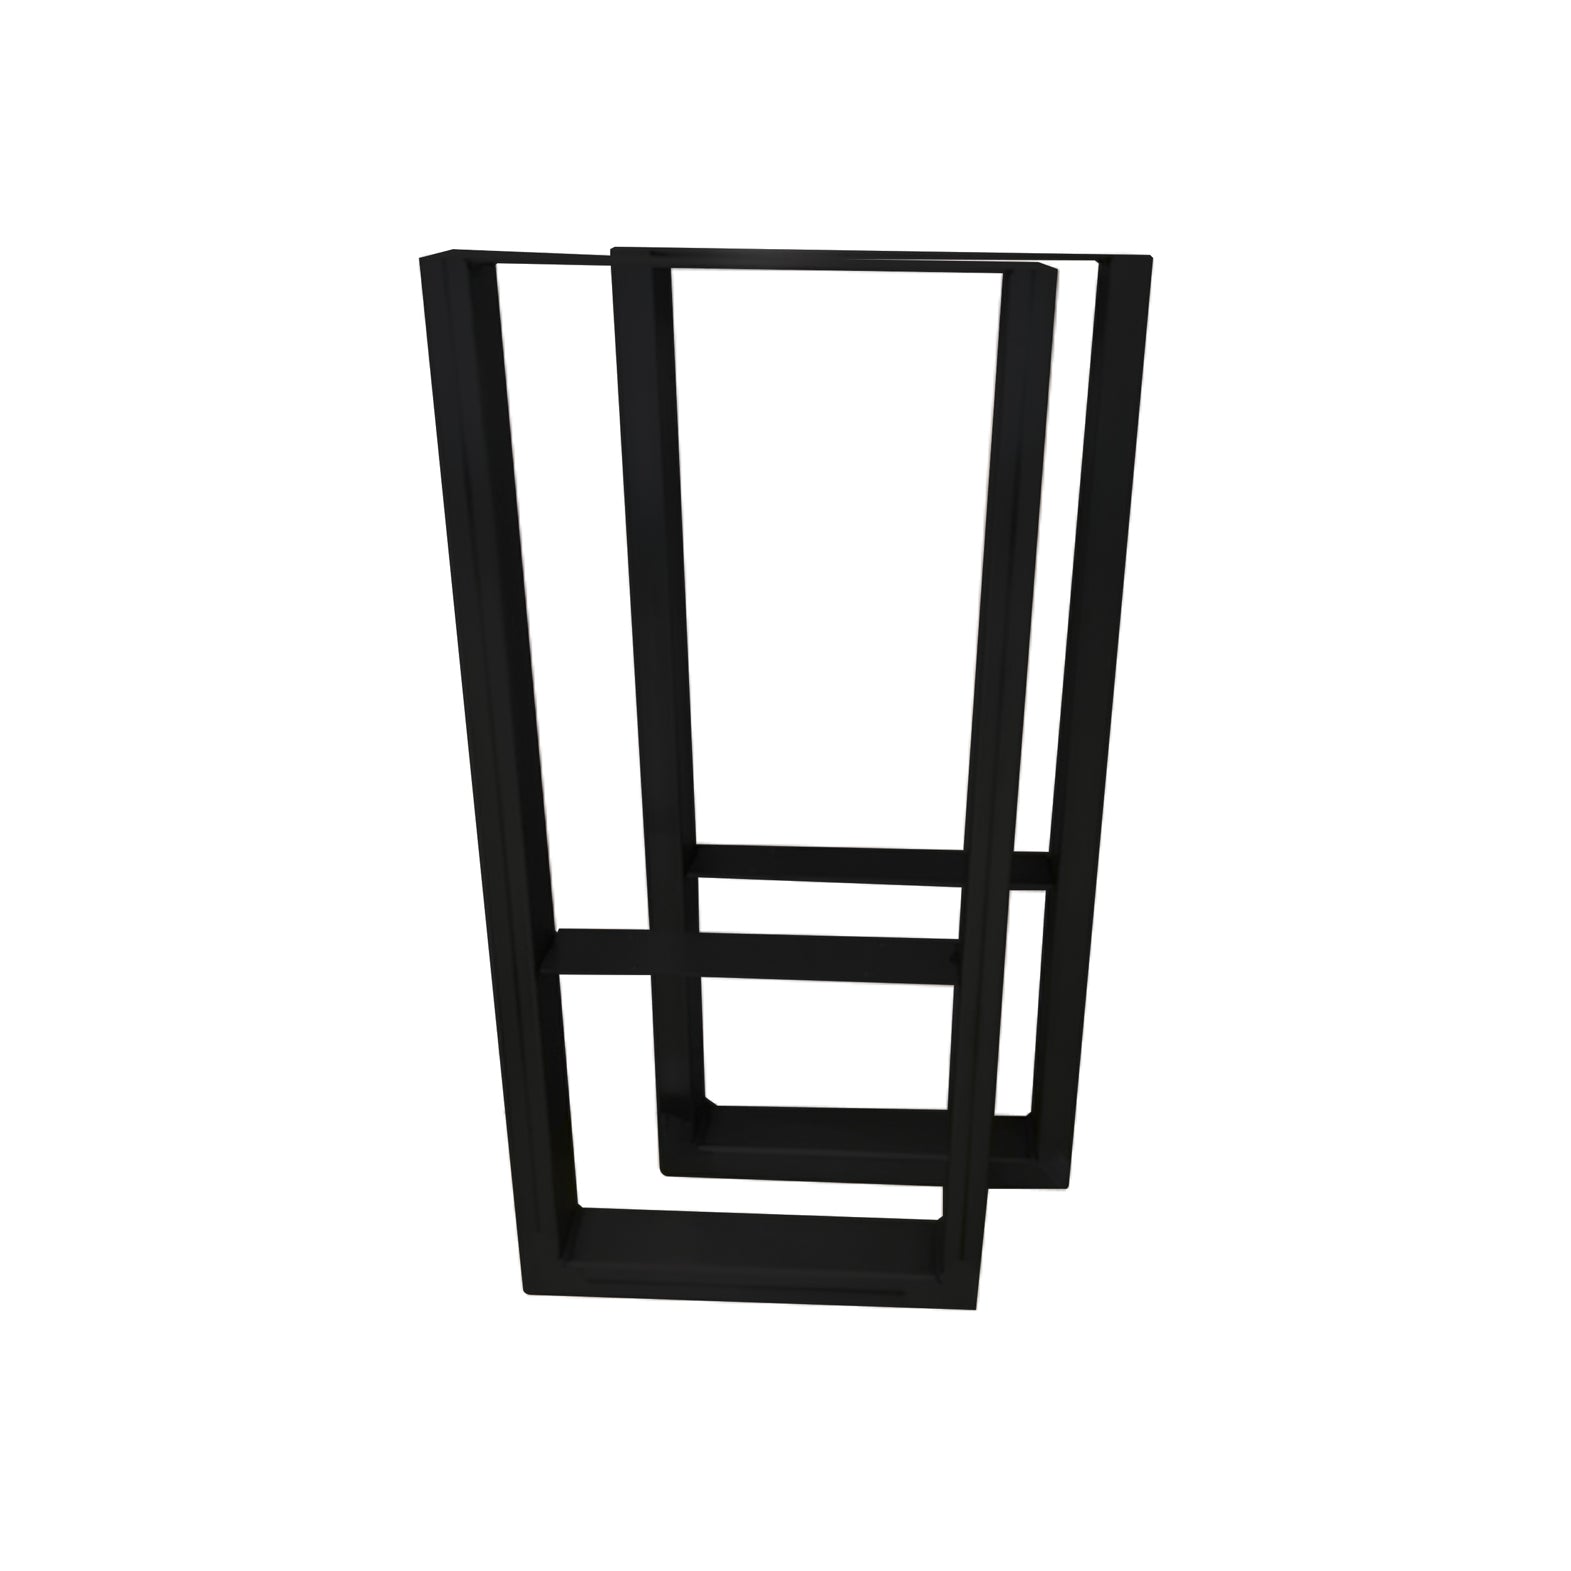 “V” LEGS 38" “Bar Type” Black